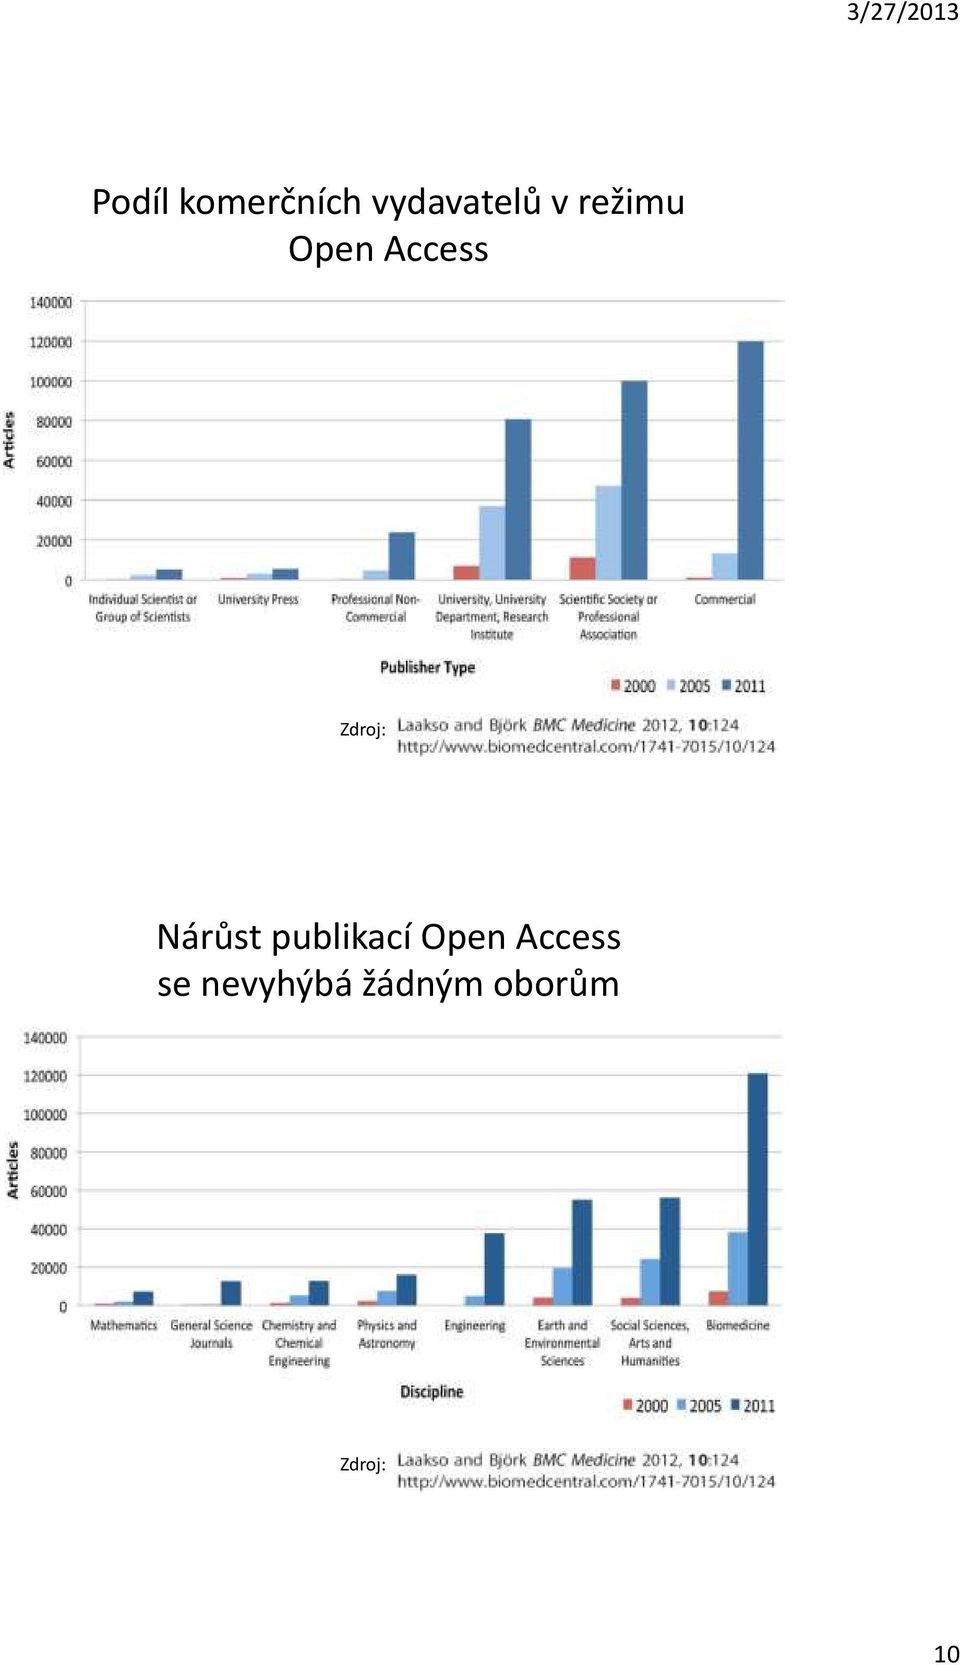 Nárůst publikací Open Access